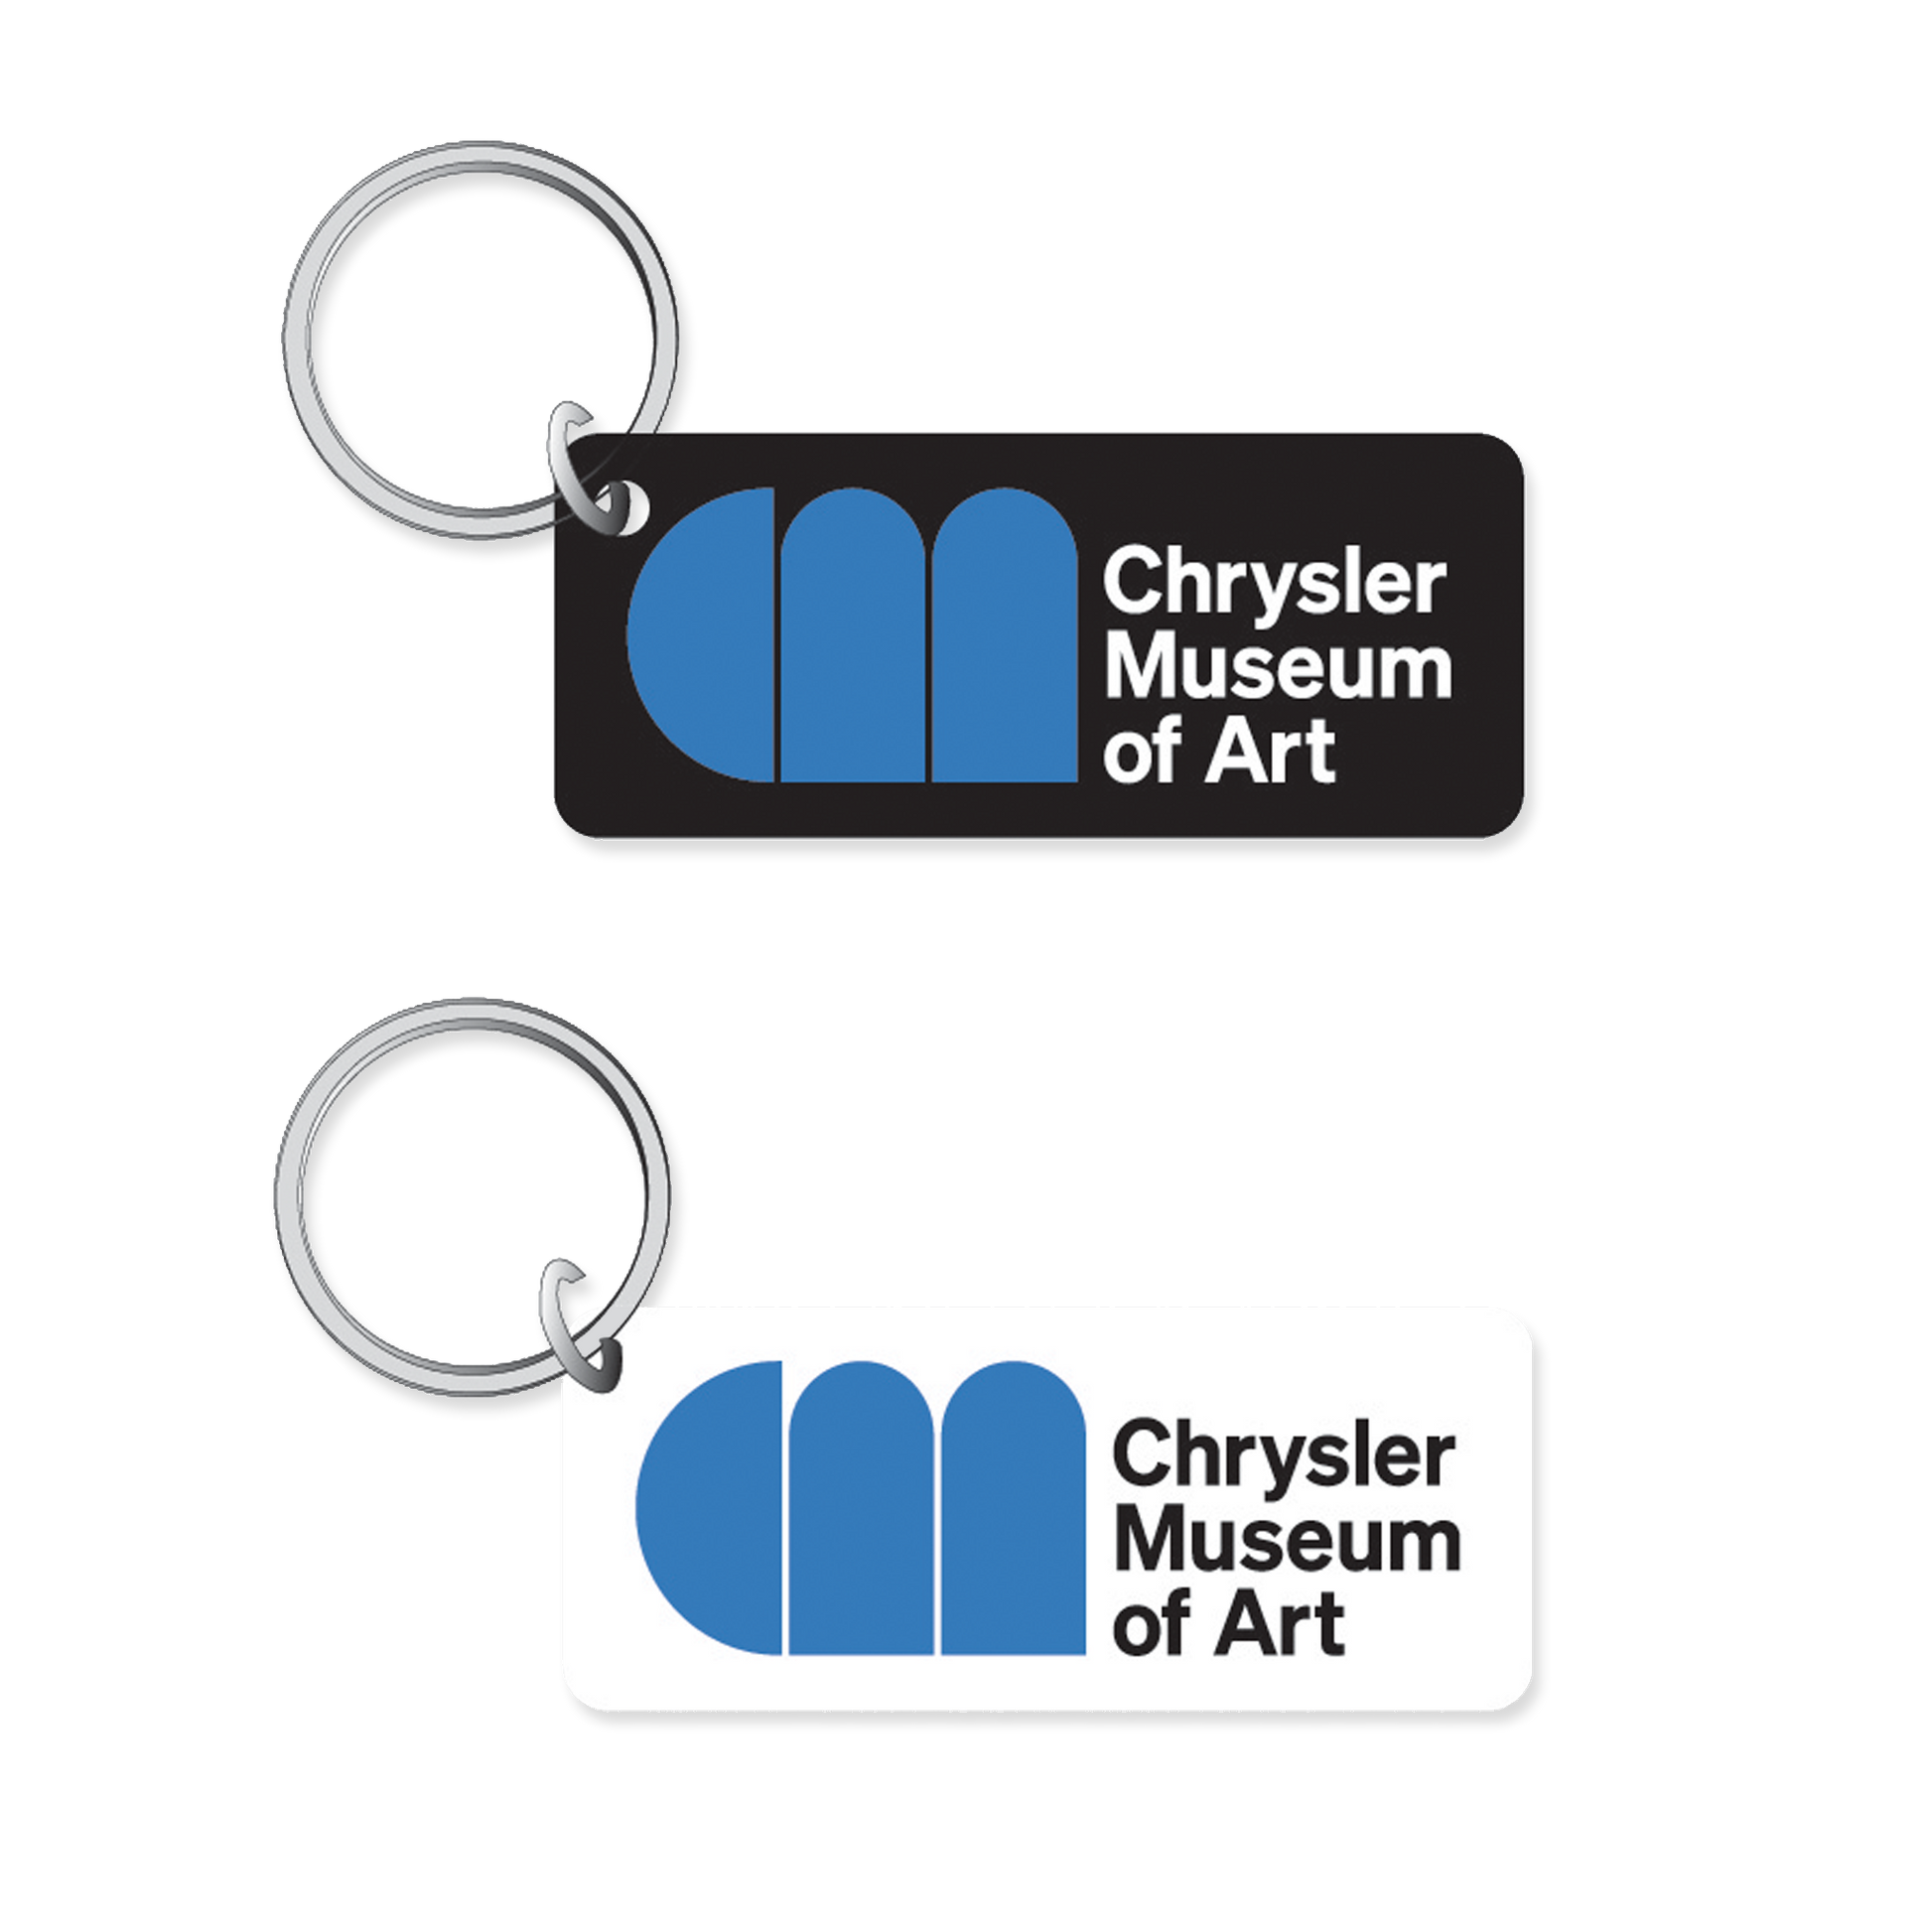 Chrysler Museum Logo Keychain - Chrysler Museum Shop